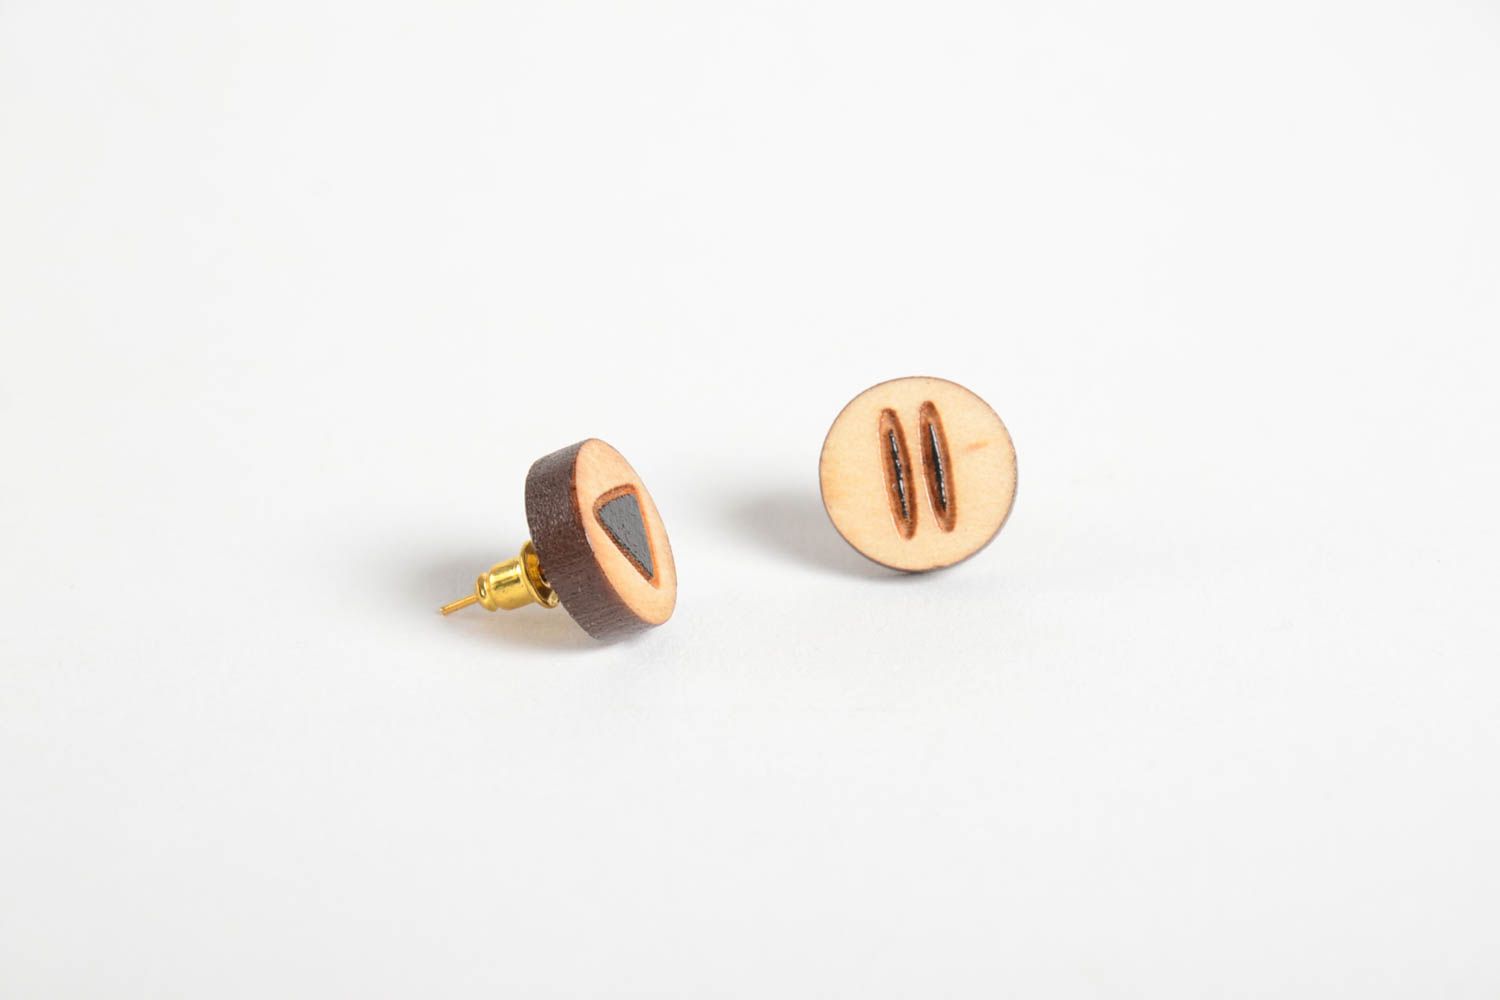 Unusual handmade wooden earrings artisan jewelry designs stud earrings photo 5